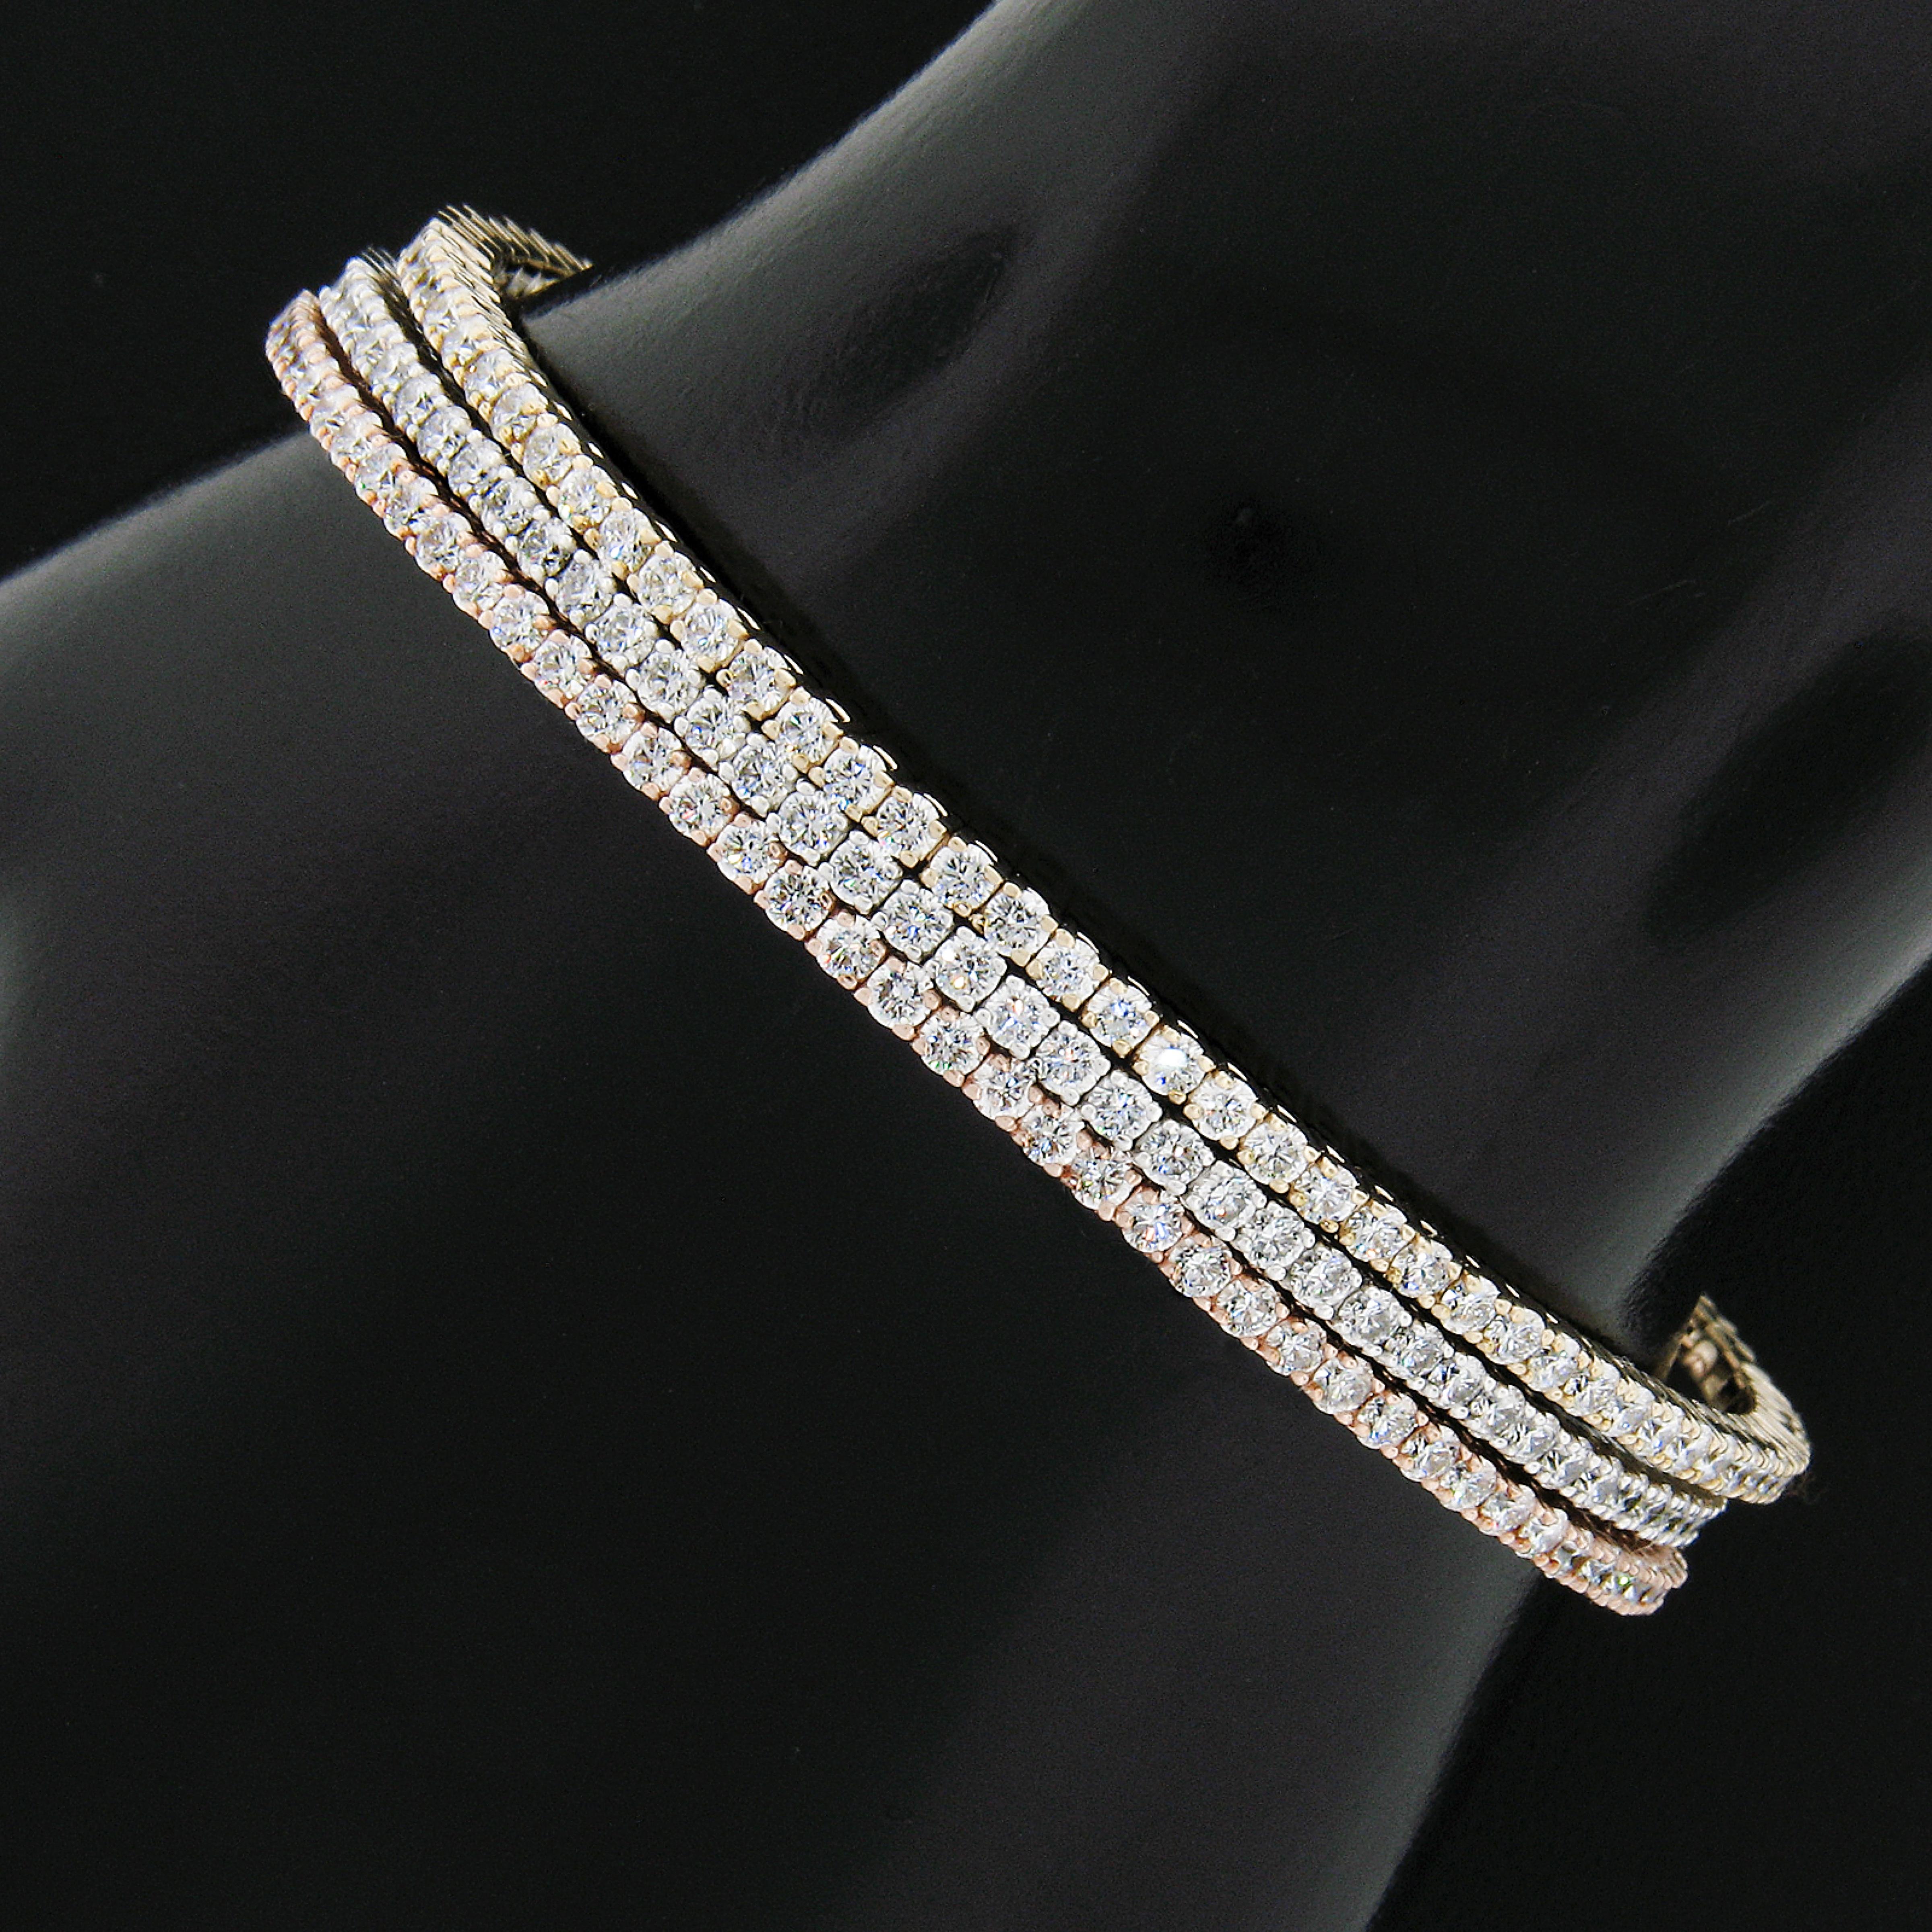 Nous vous présentons trois magnifiques bracelets semi-flexibles nouvellement fabriqués en or massif 14 carats rose, jaune et blanc, chacun d'entre eux étant orné de diamants de très belle qualité soigneusement sertis sur sa partie supérieure. Ces